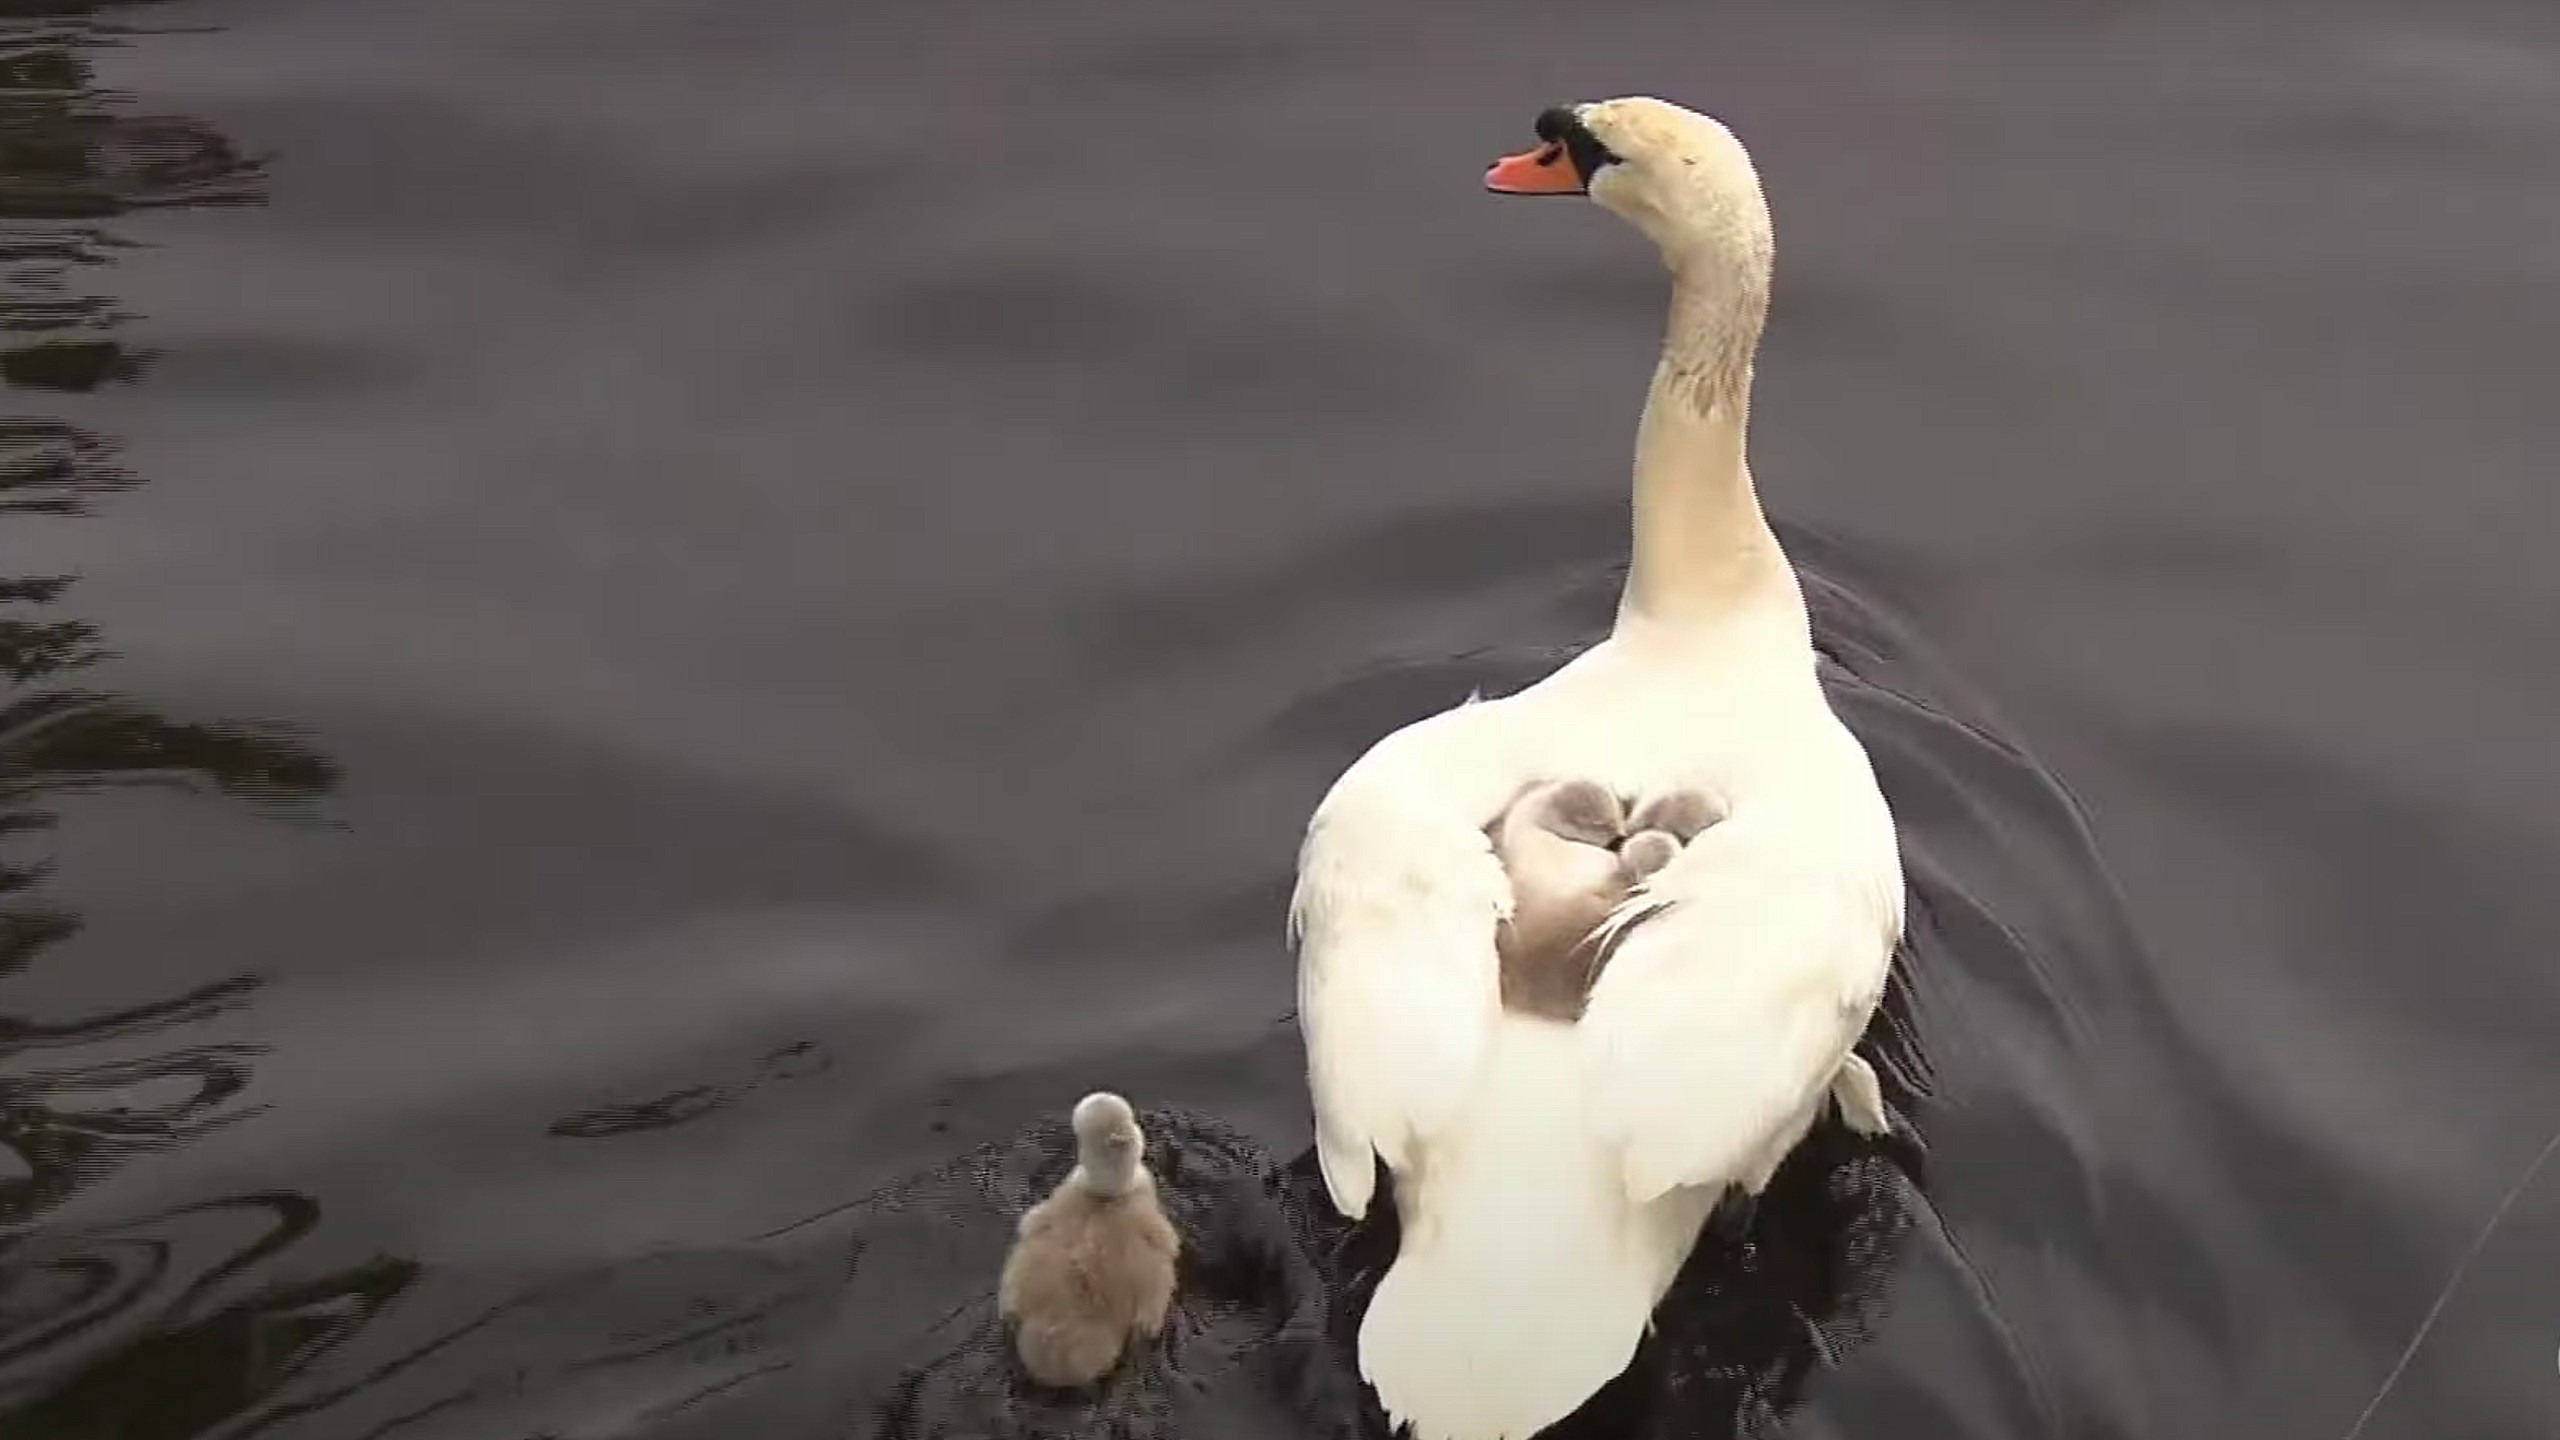 Single dad swan raises babies alone after mom swan dies